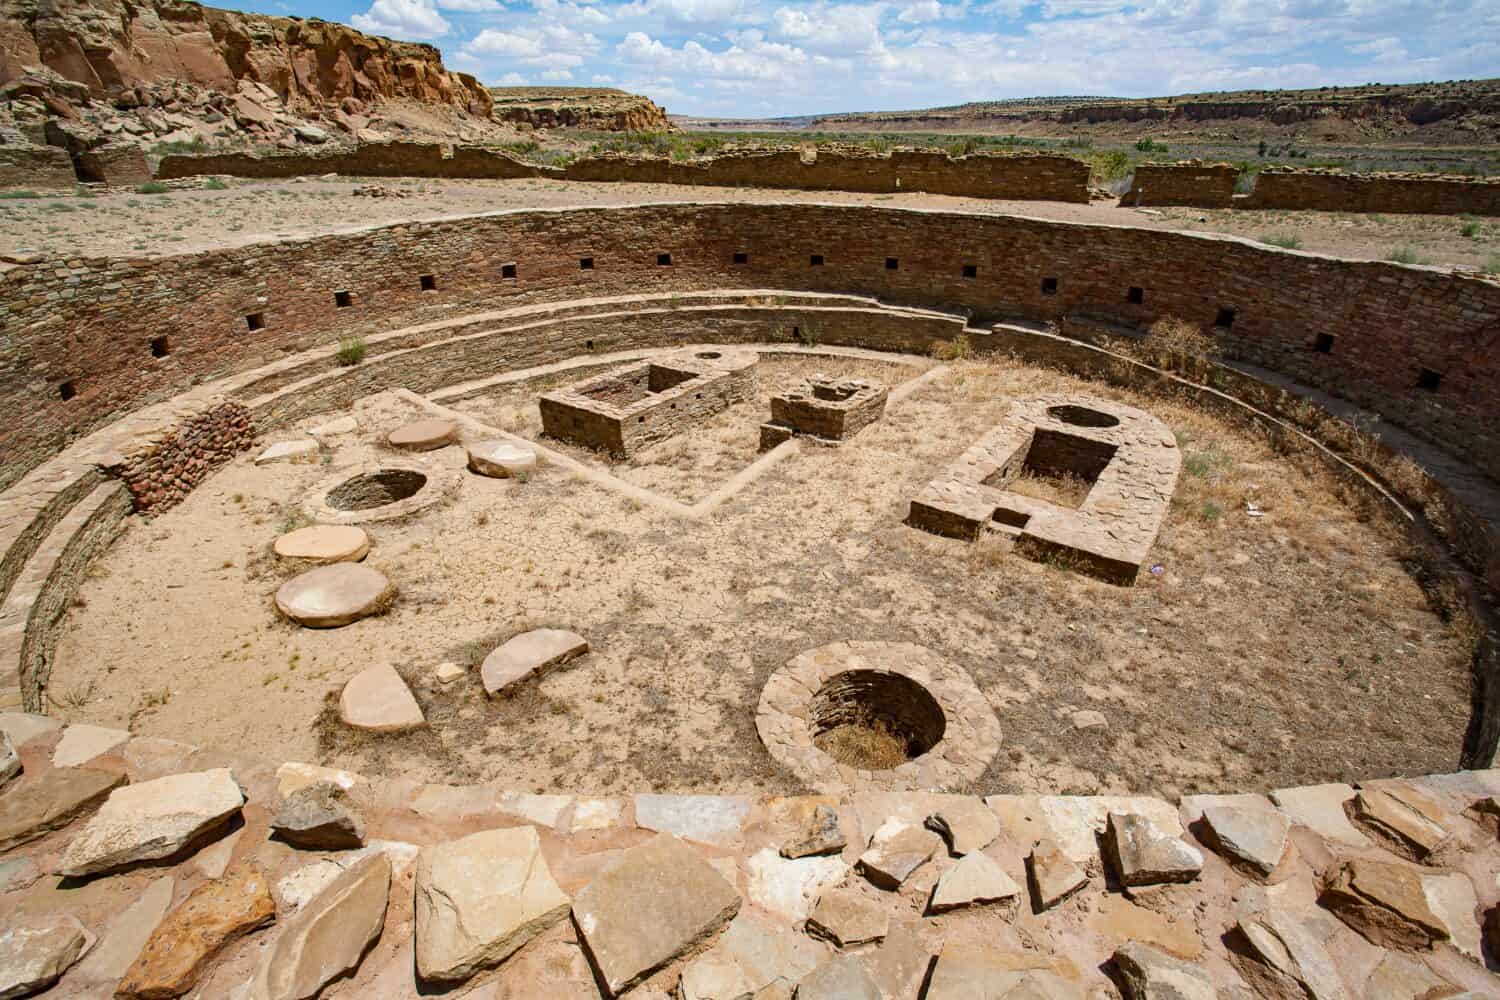 Native American ruins at Chaco Canyon, New Mexico.